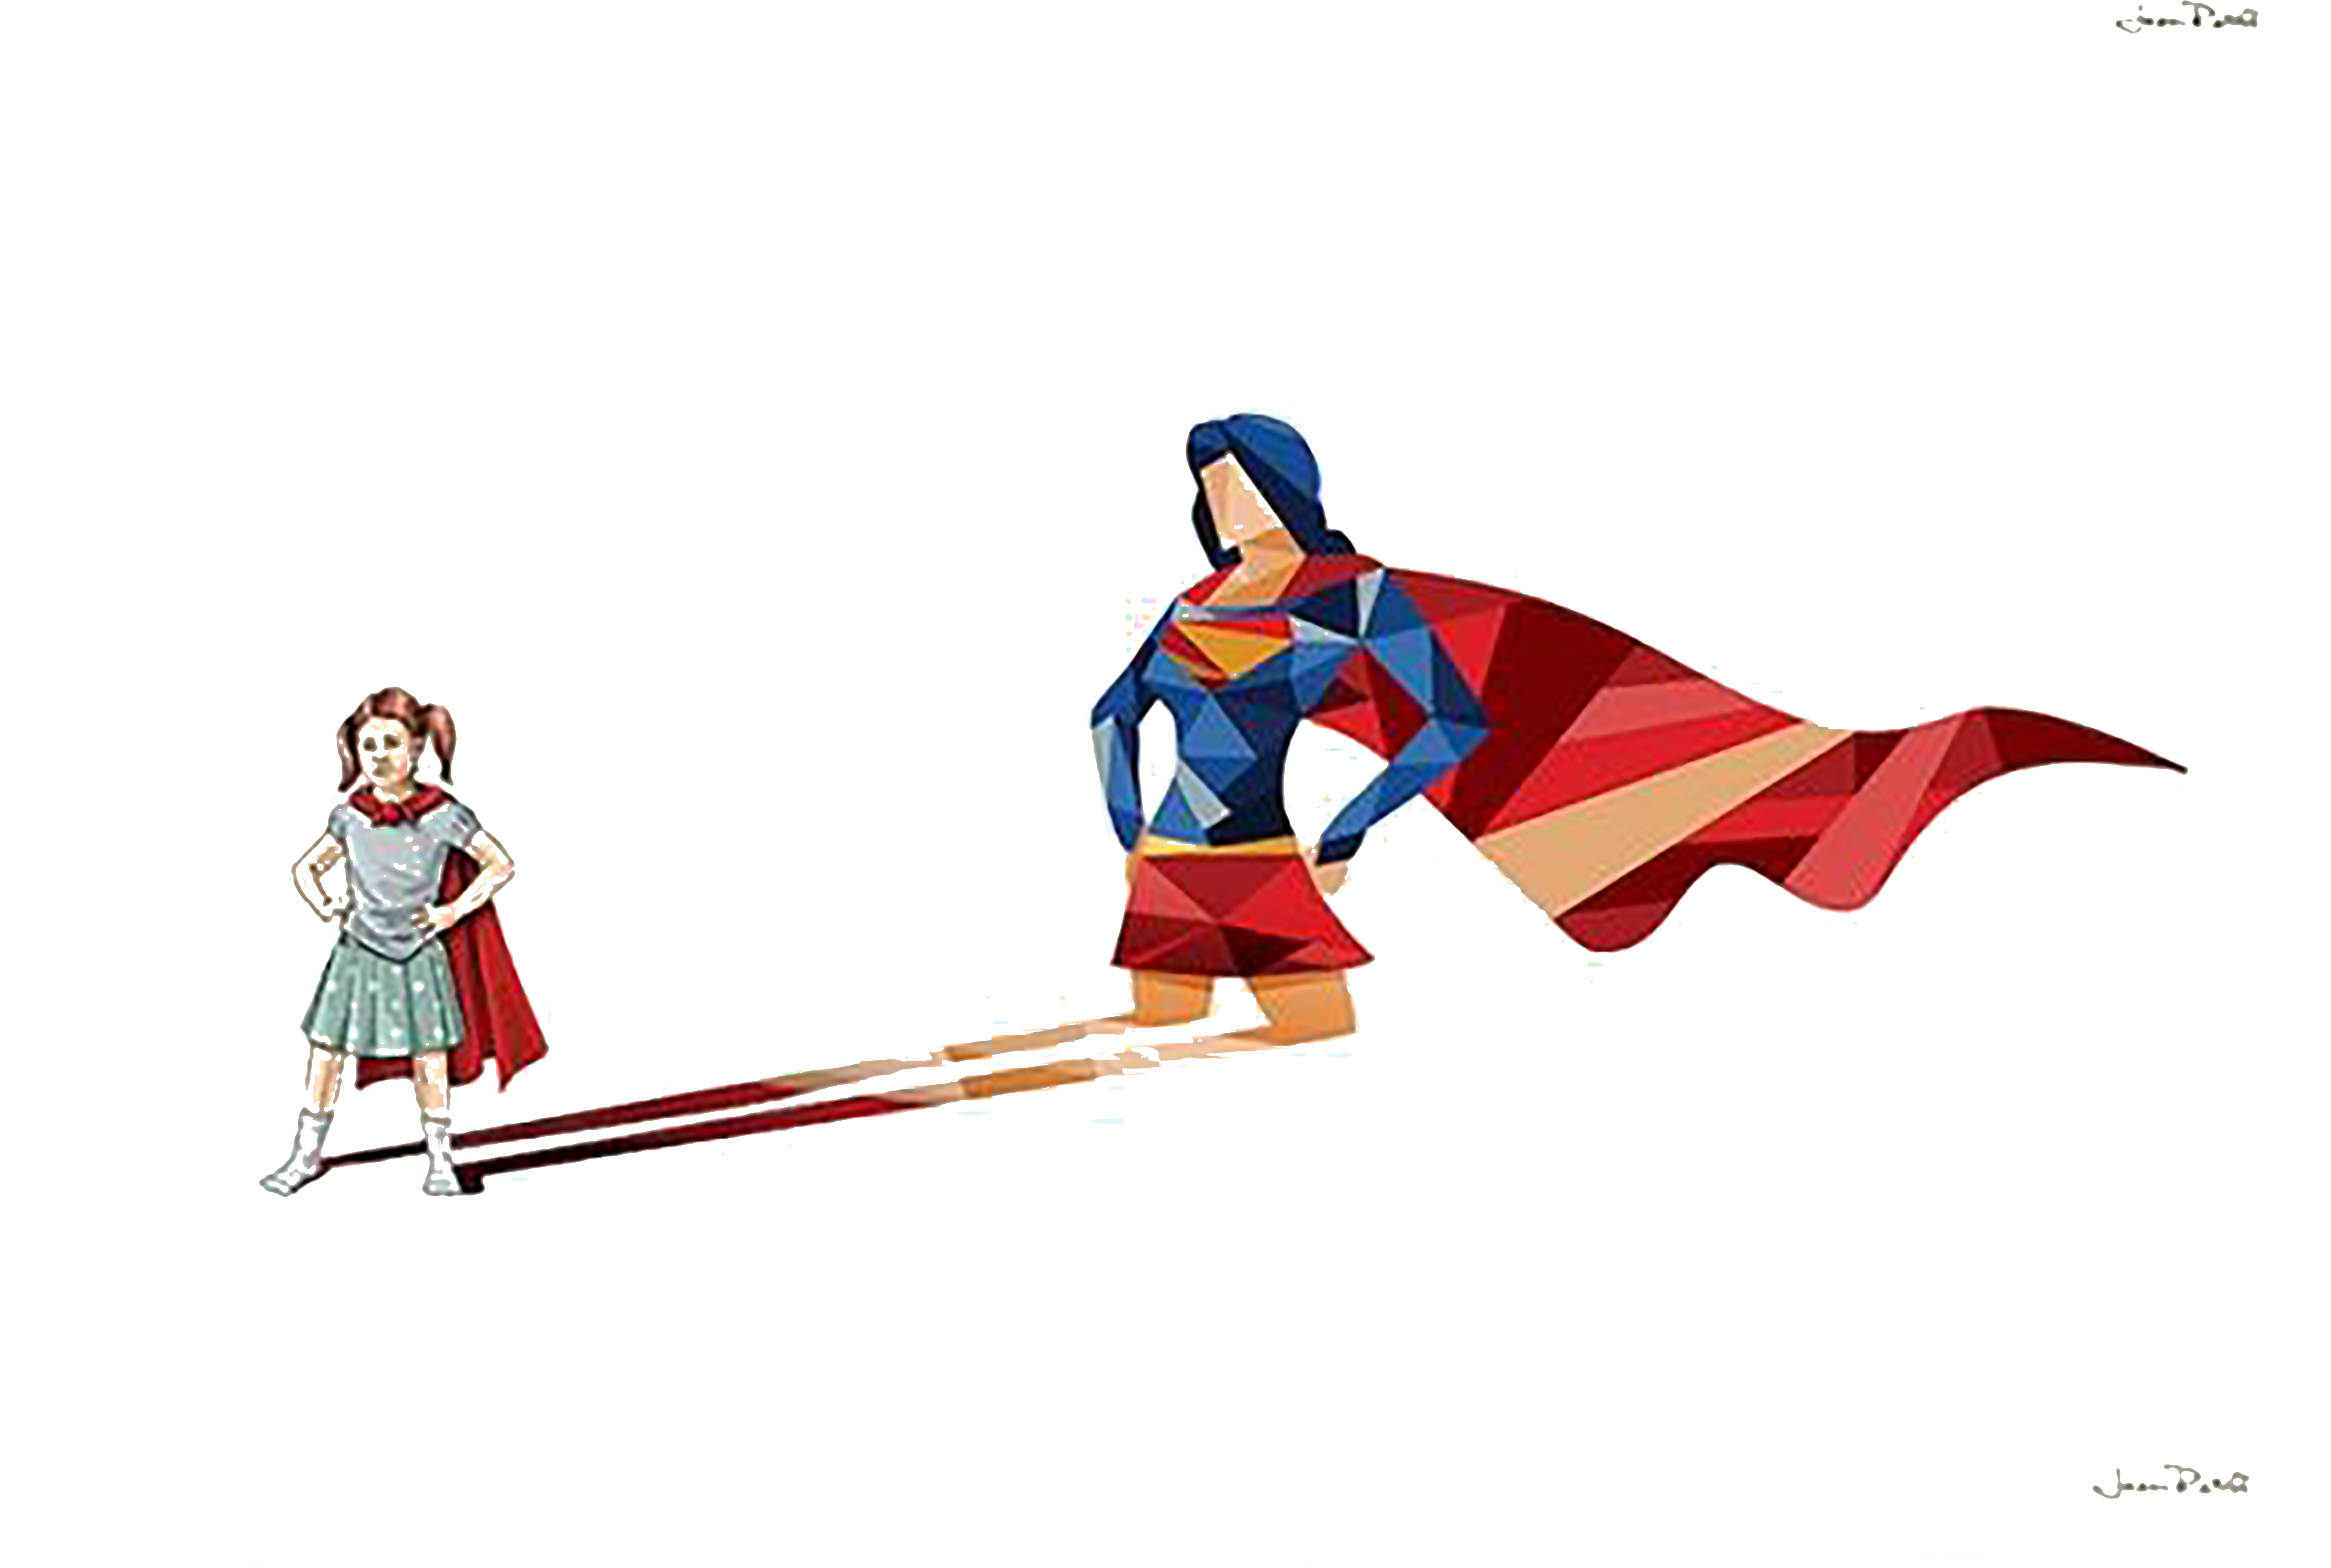 Superhero Child Art Illustration - Jason Ratliff Art (5669x4332)